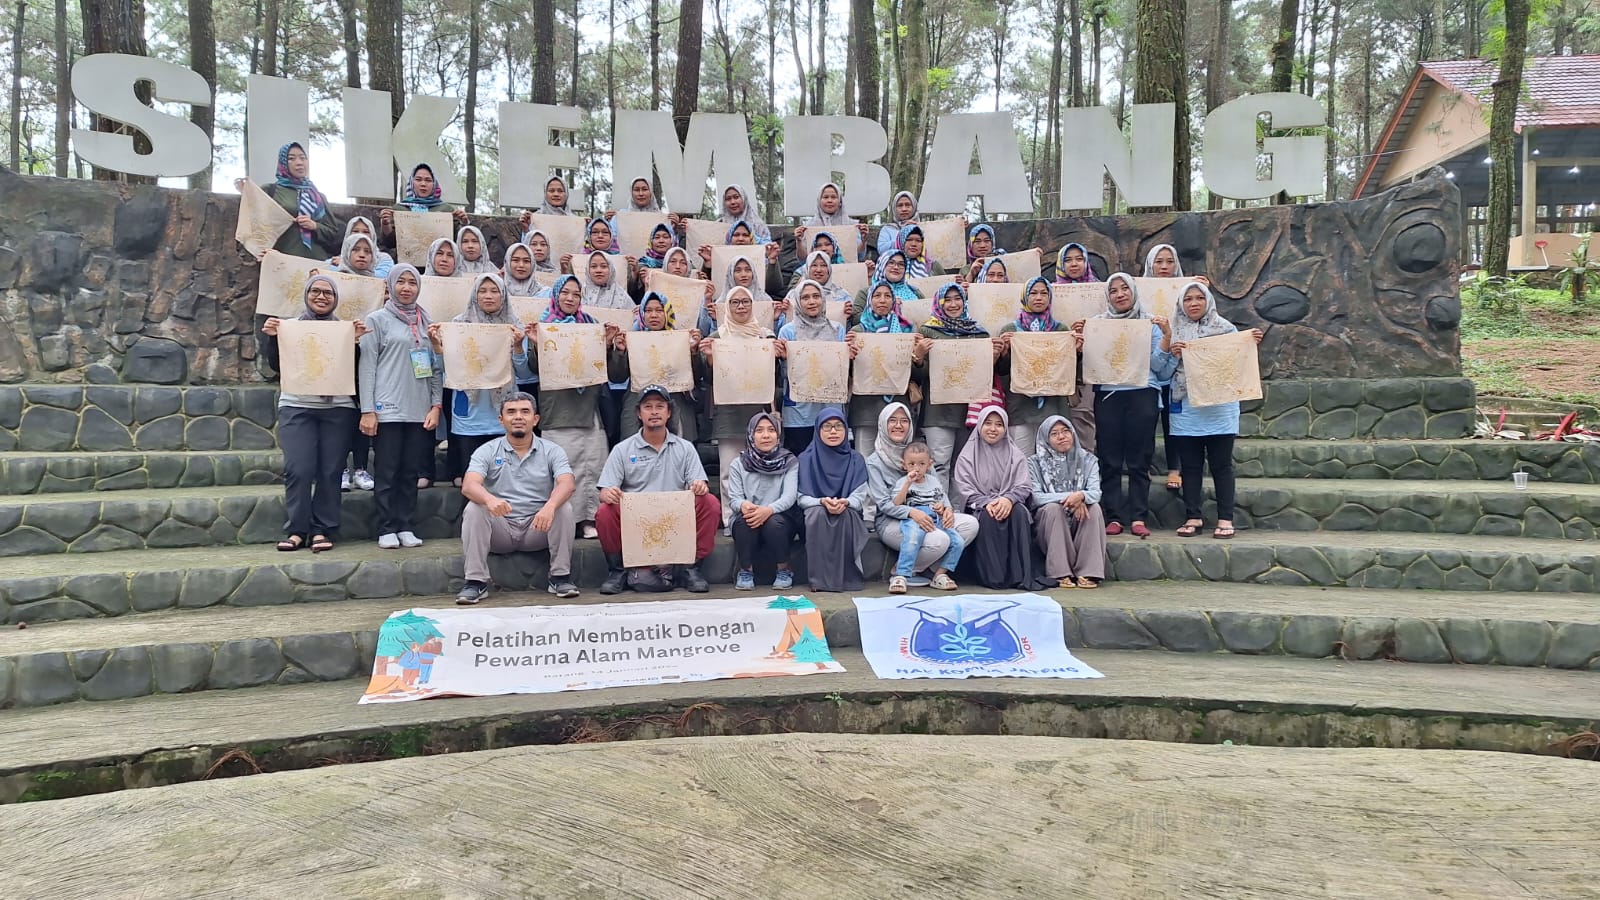  Tanam Pohon Bersama, HAE-IPB Komda Jawa Tengah Silaturahmi Sambil Jaga Lingkungan 